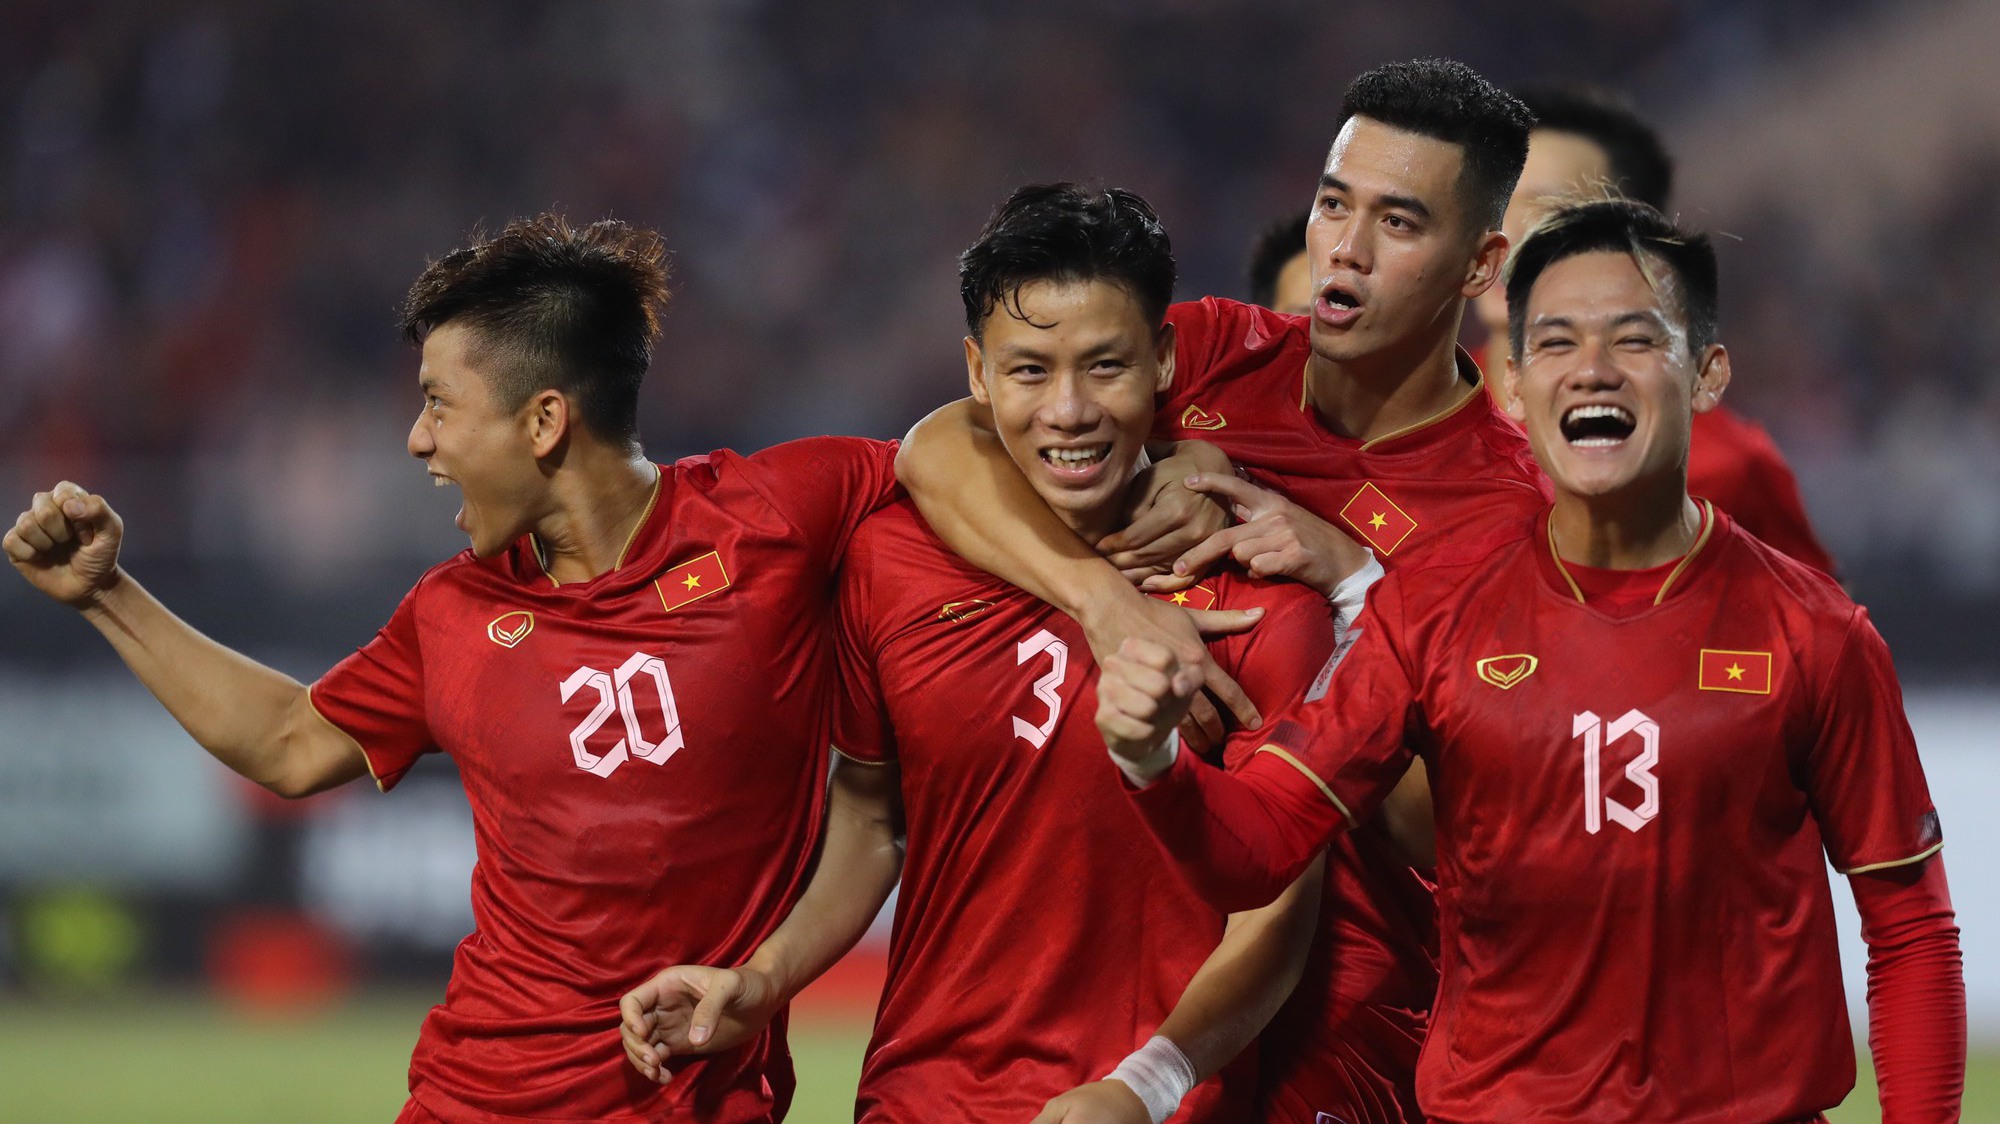 Tin nóng AFF Cup ngày 3/1: Việt Nam vs Myanmar (19h30), Malaysia đấu Singapore